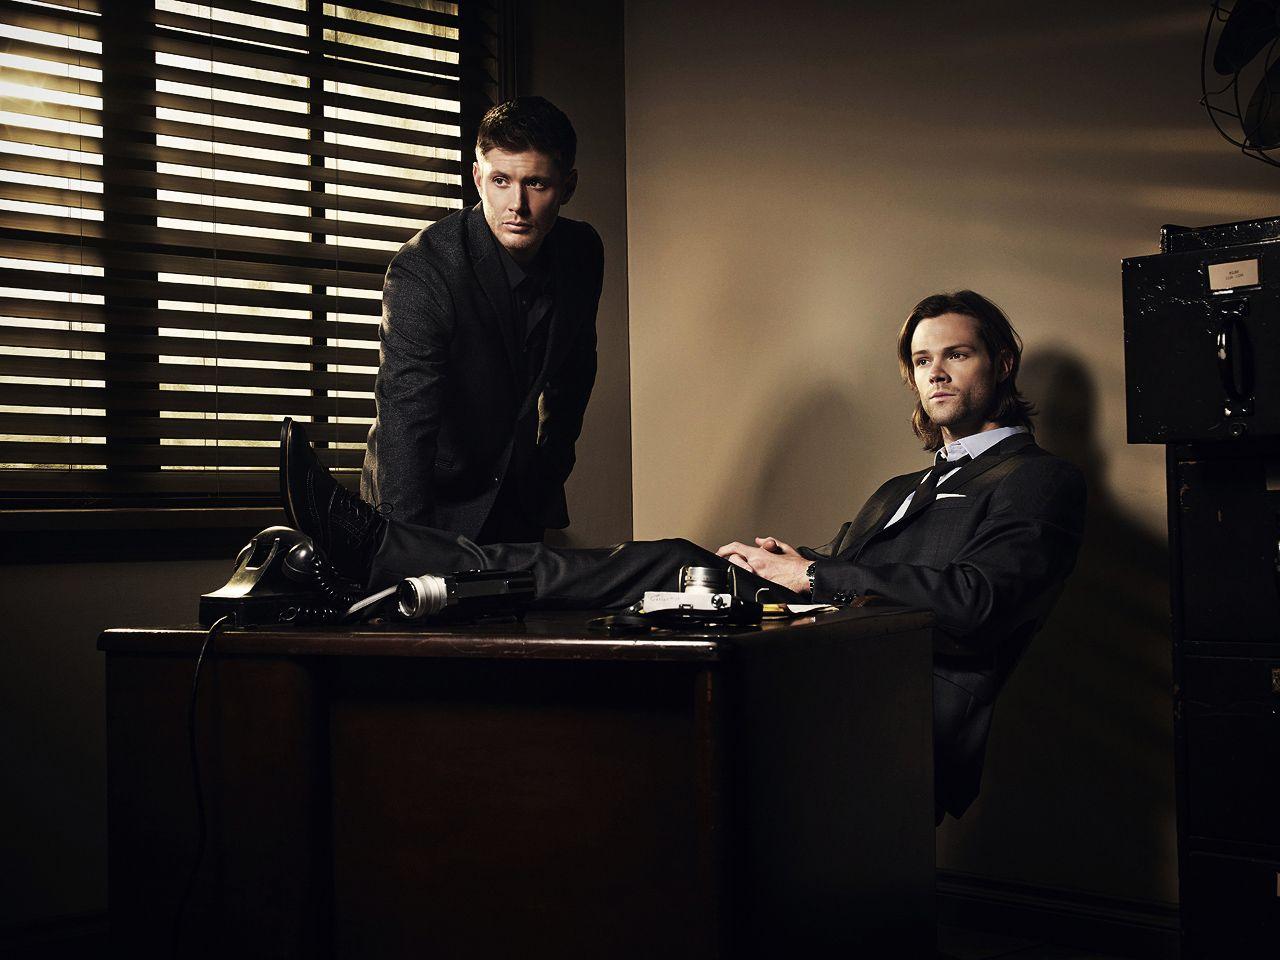 Supernatural' Season 9: New Promo Shots No They Didn't!